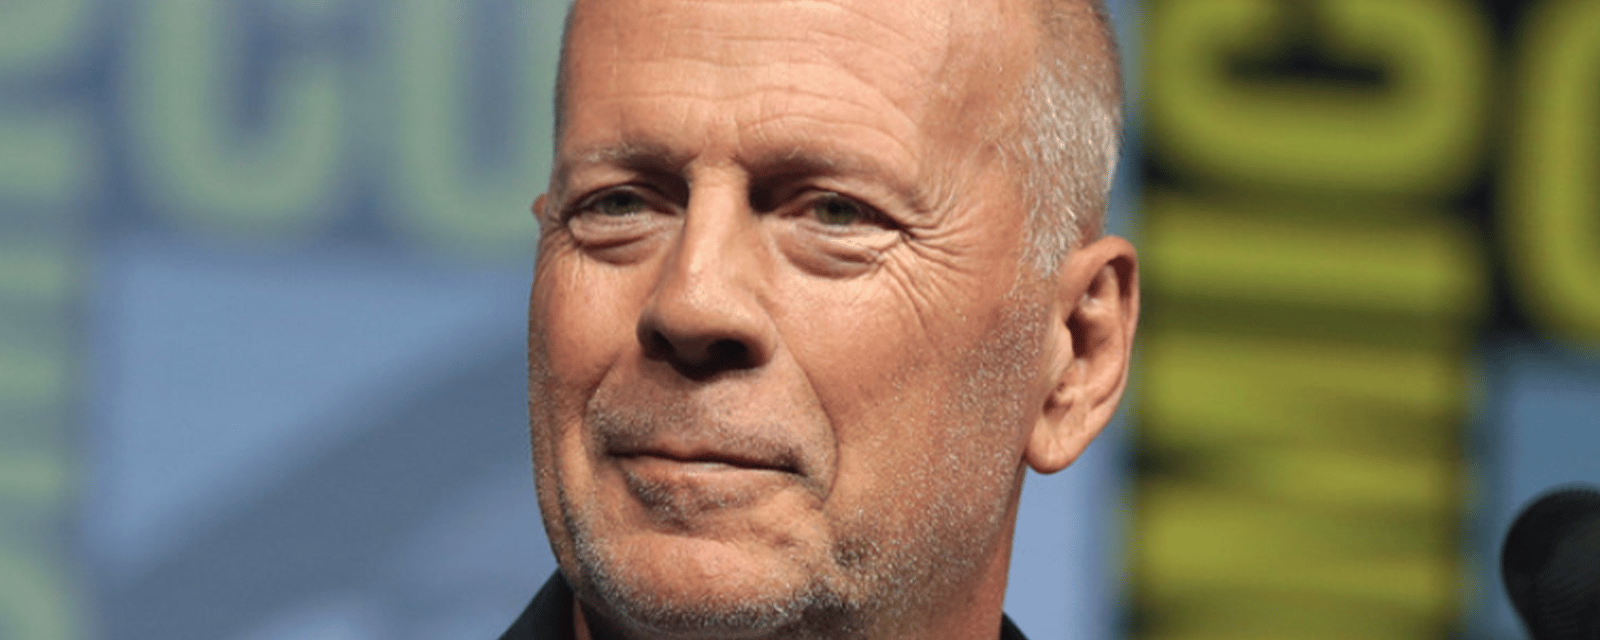 Les proches de Bruce Willis sont plus que jamais à ses côtés